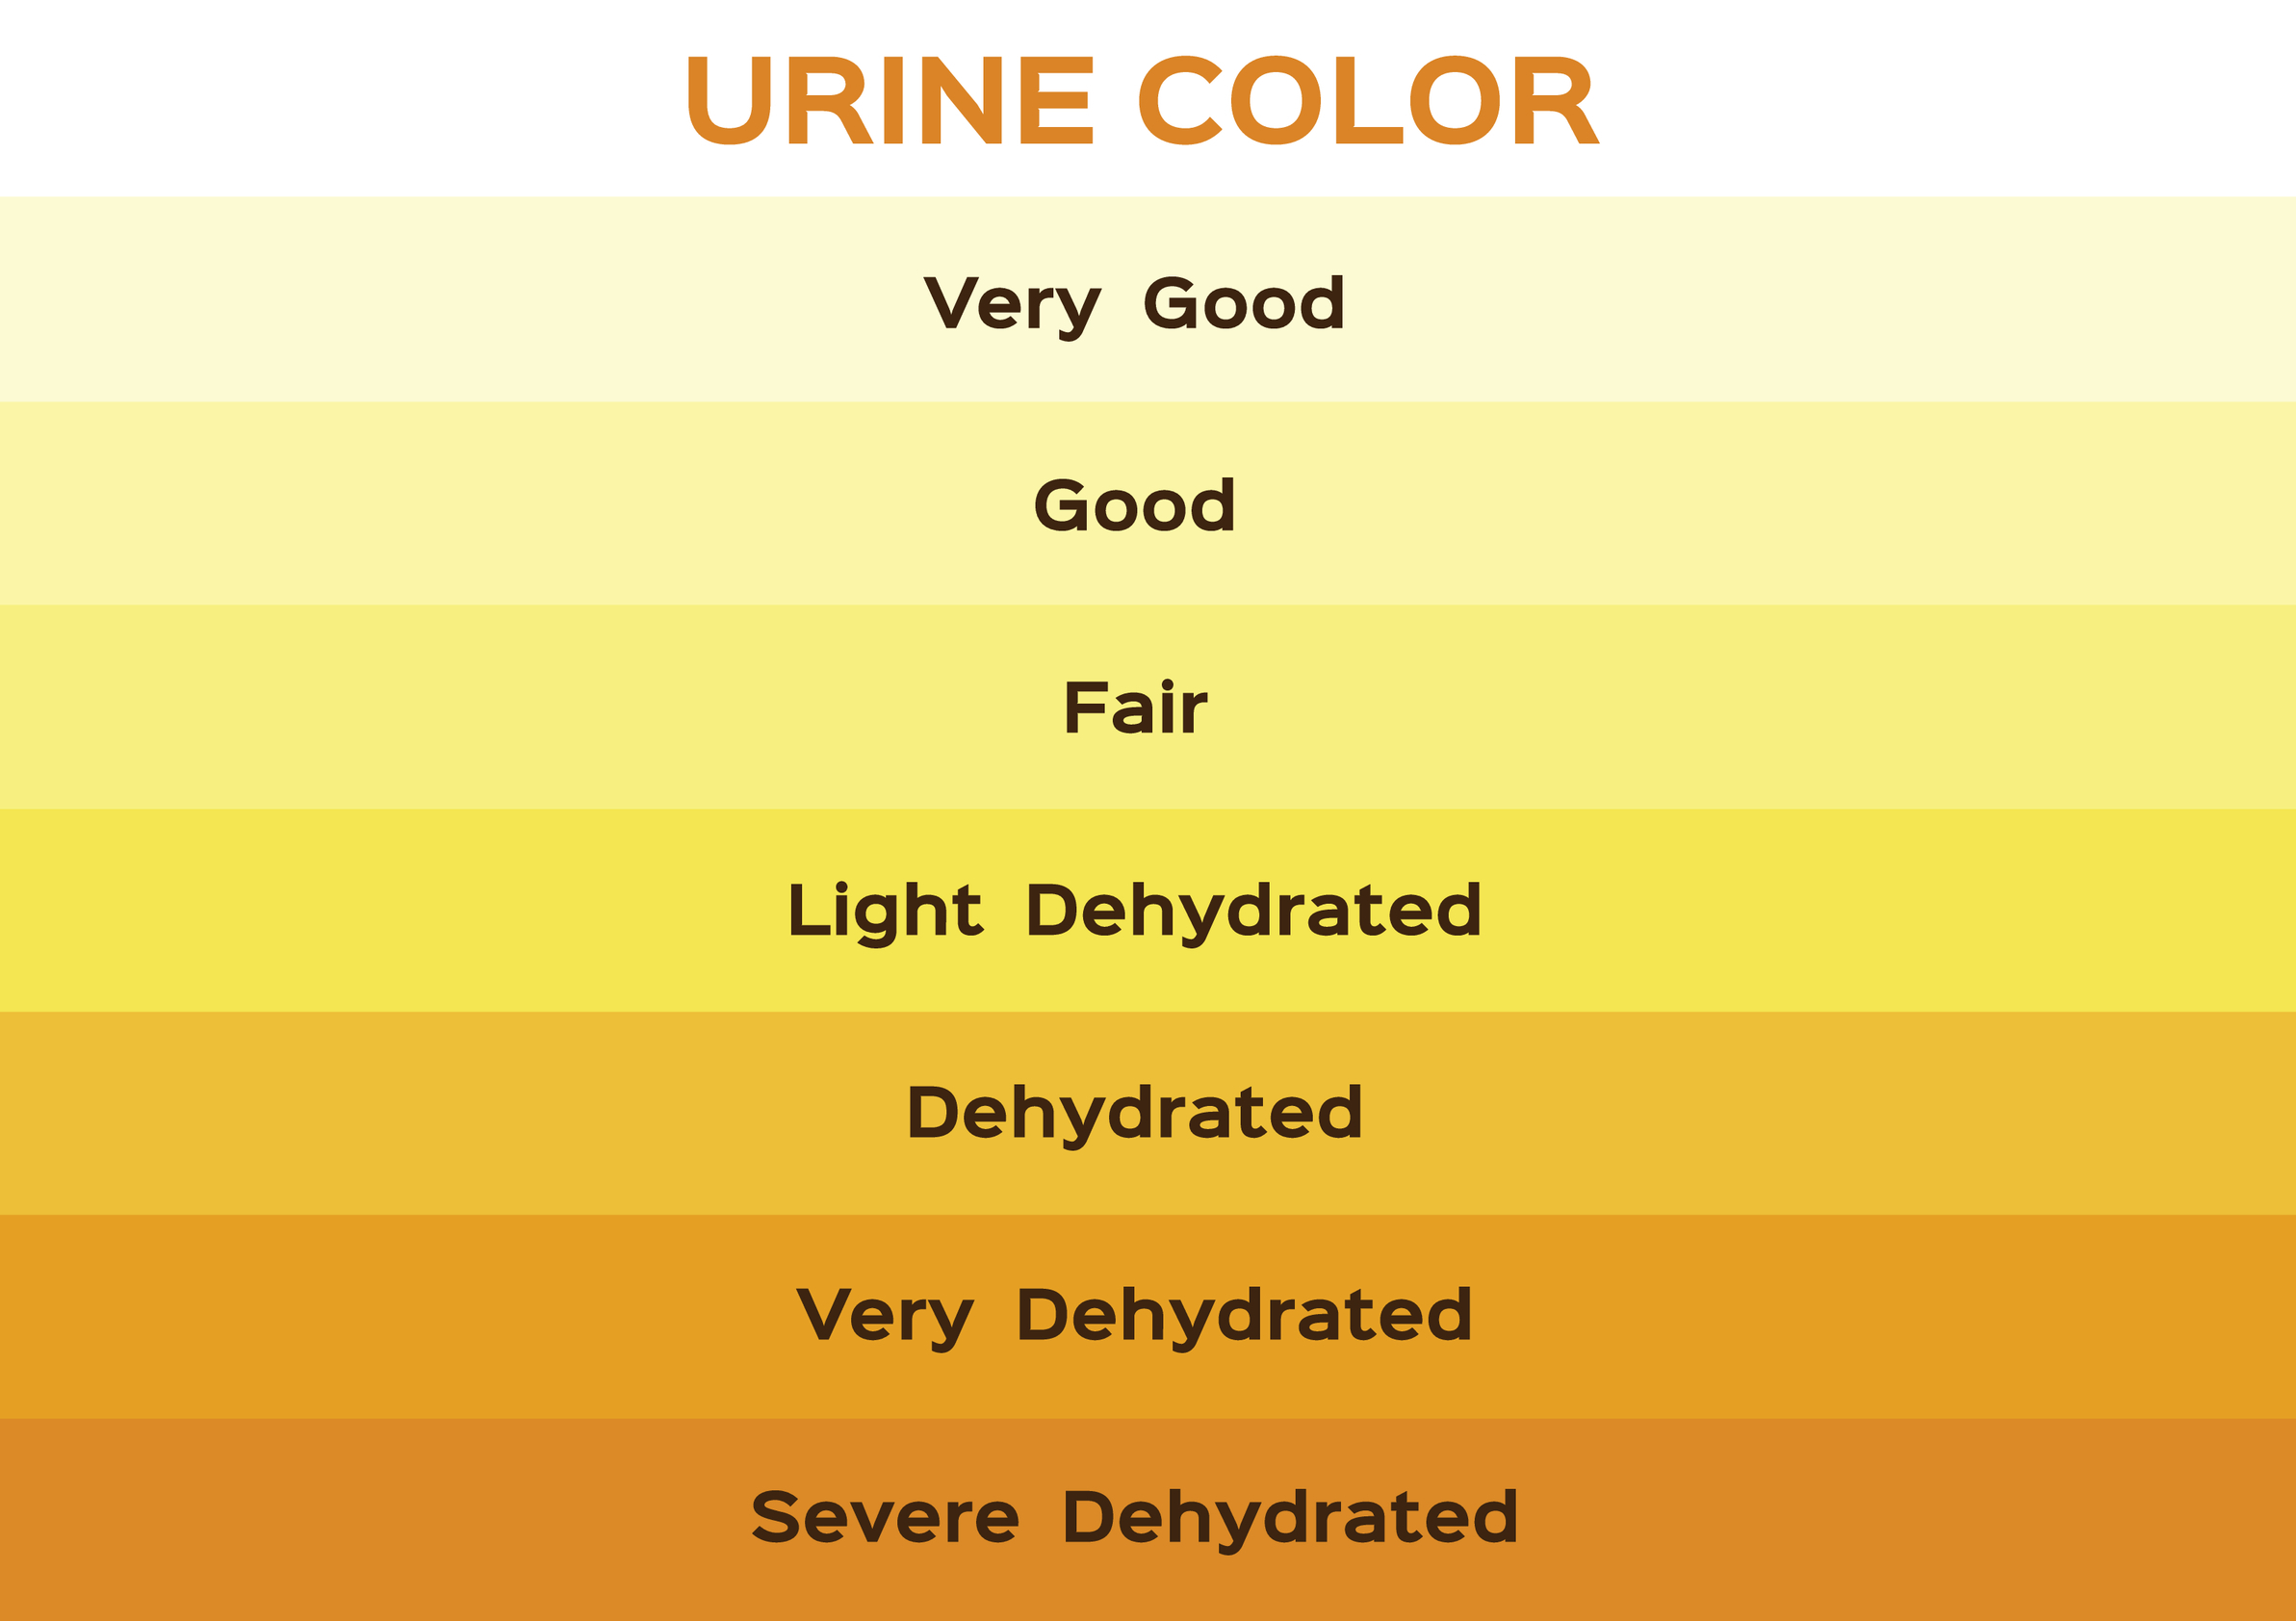 A urine colour chart